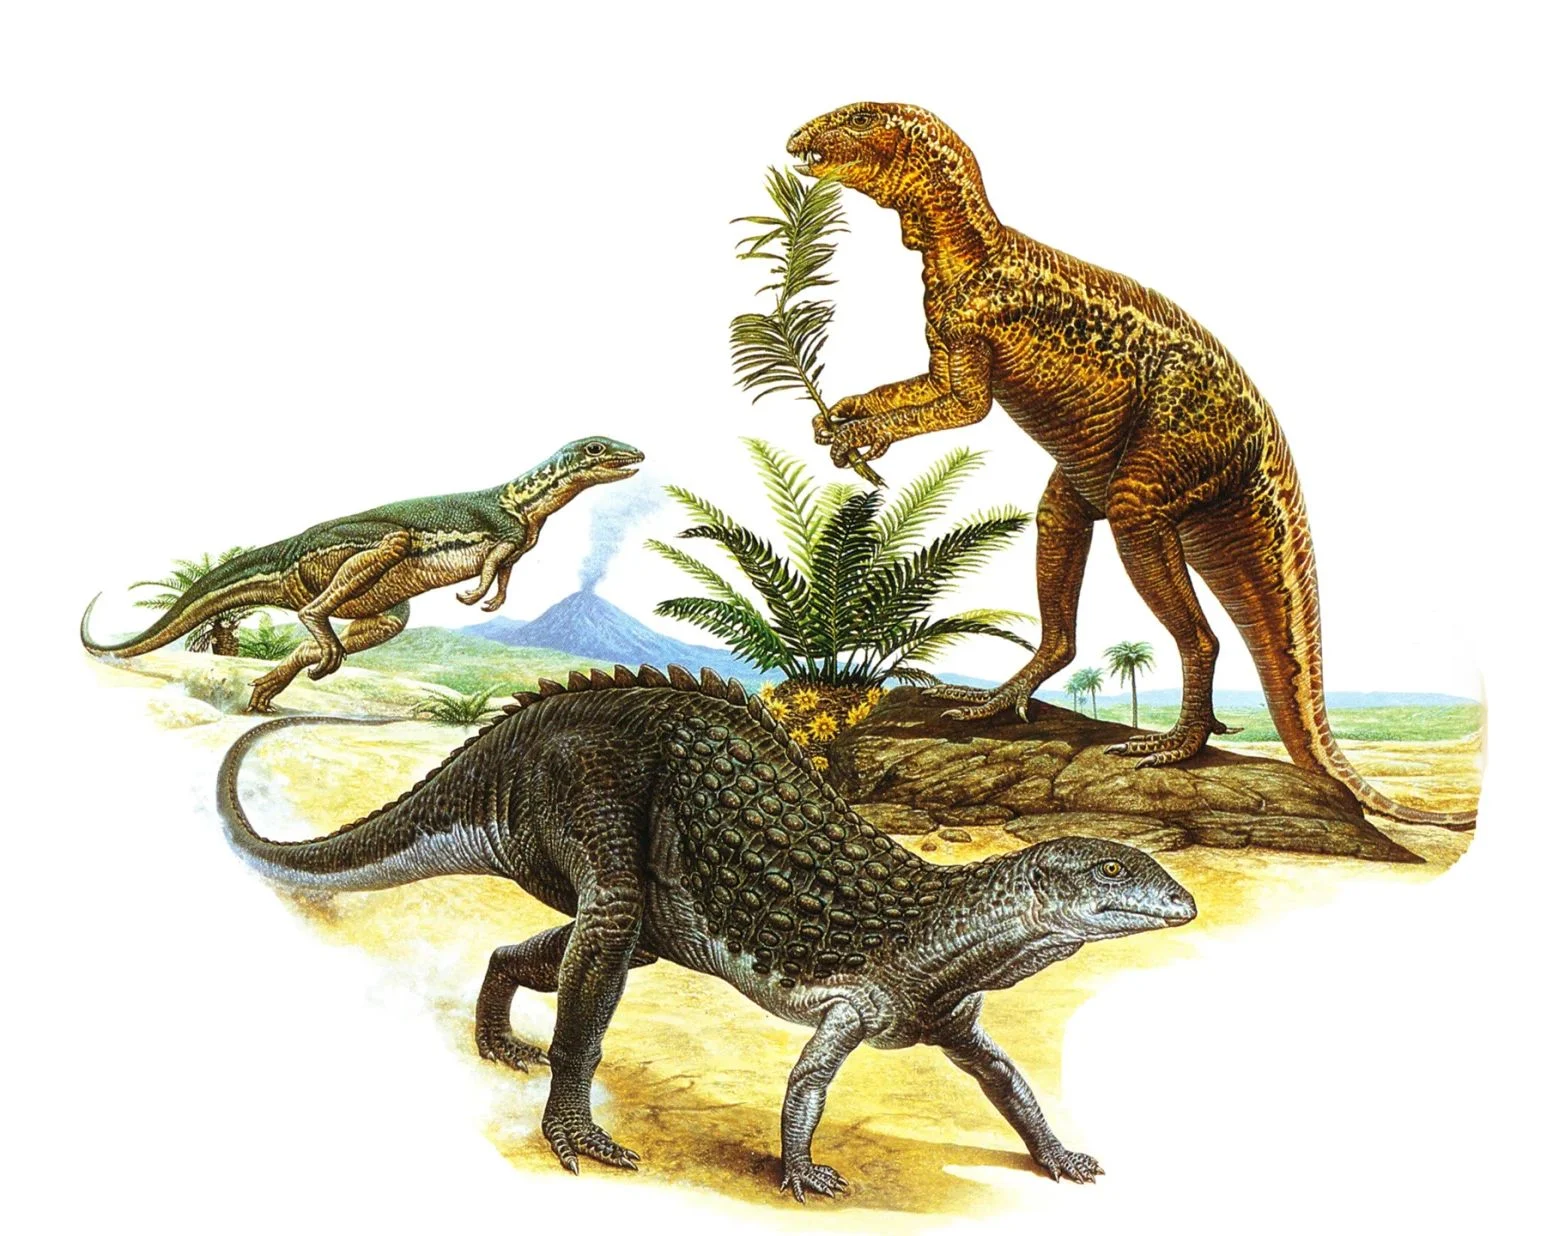 Three dinosaurs